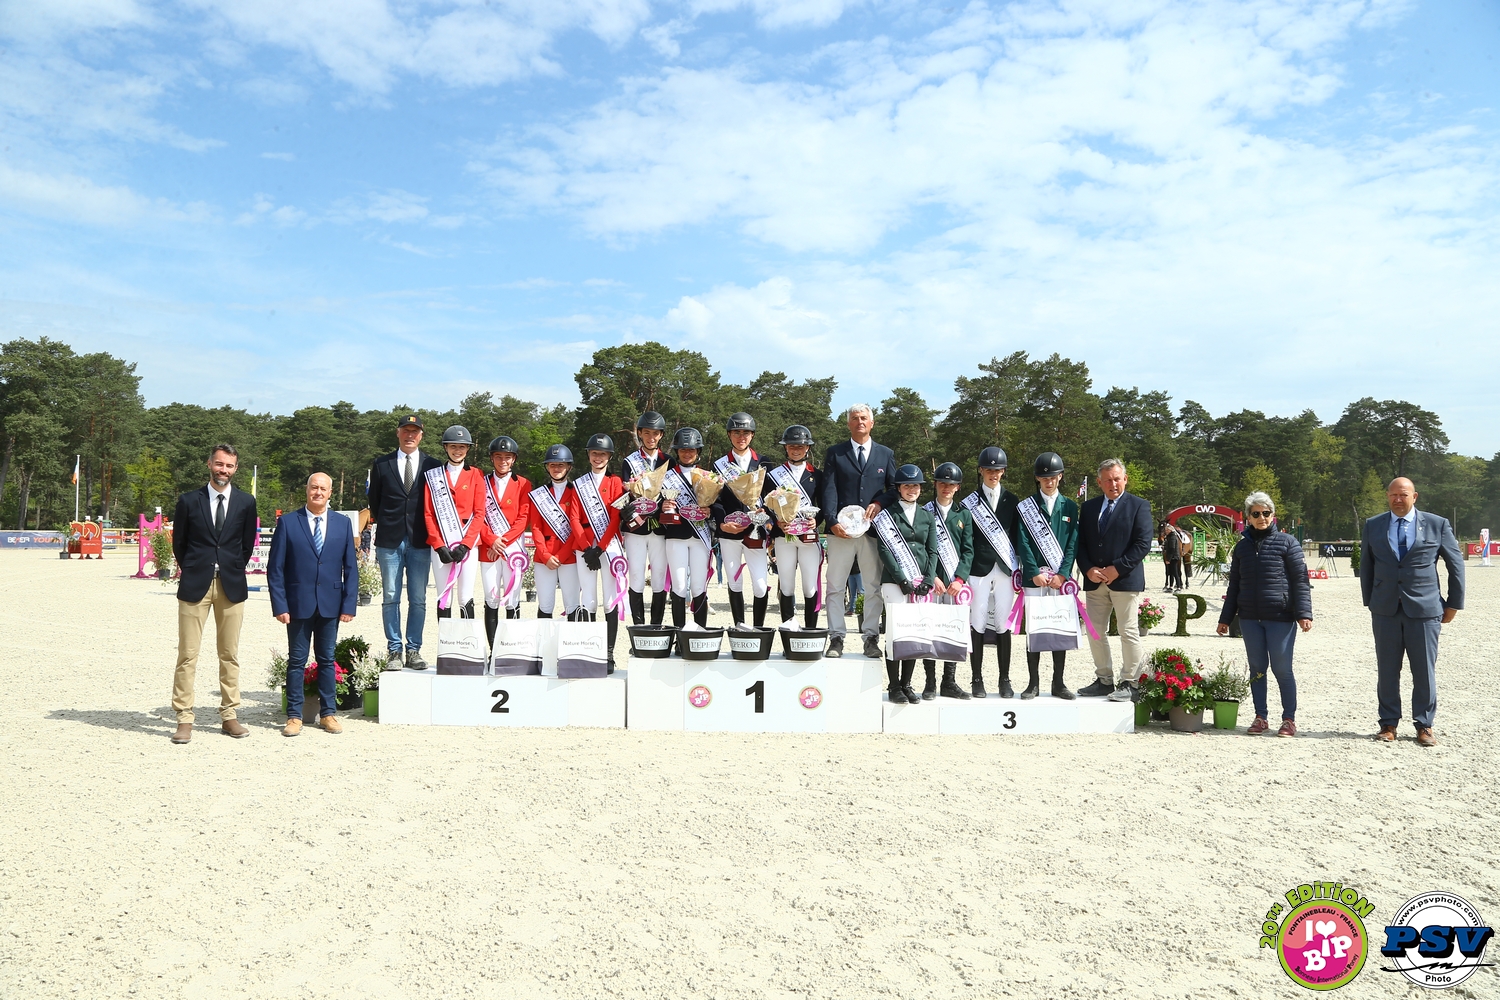 La deuxième place des Juniors belges à la Coupe des Nations de Fontainebleau, France, remporte la victoire.